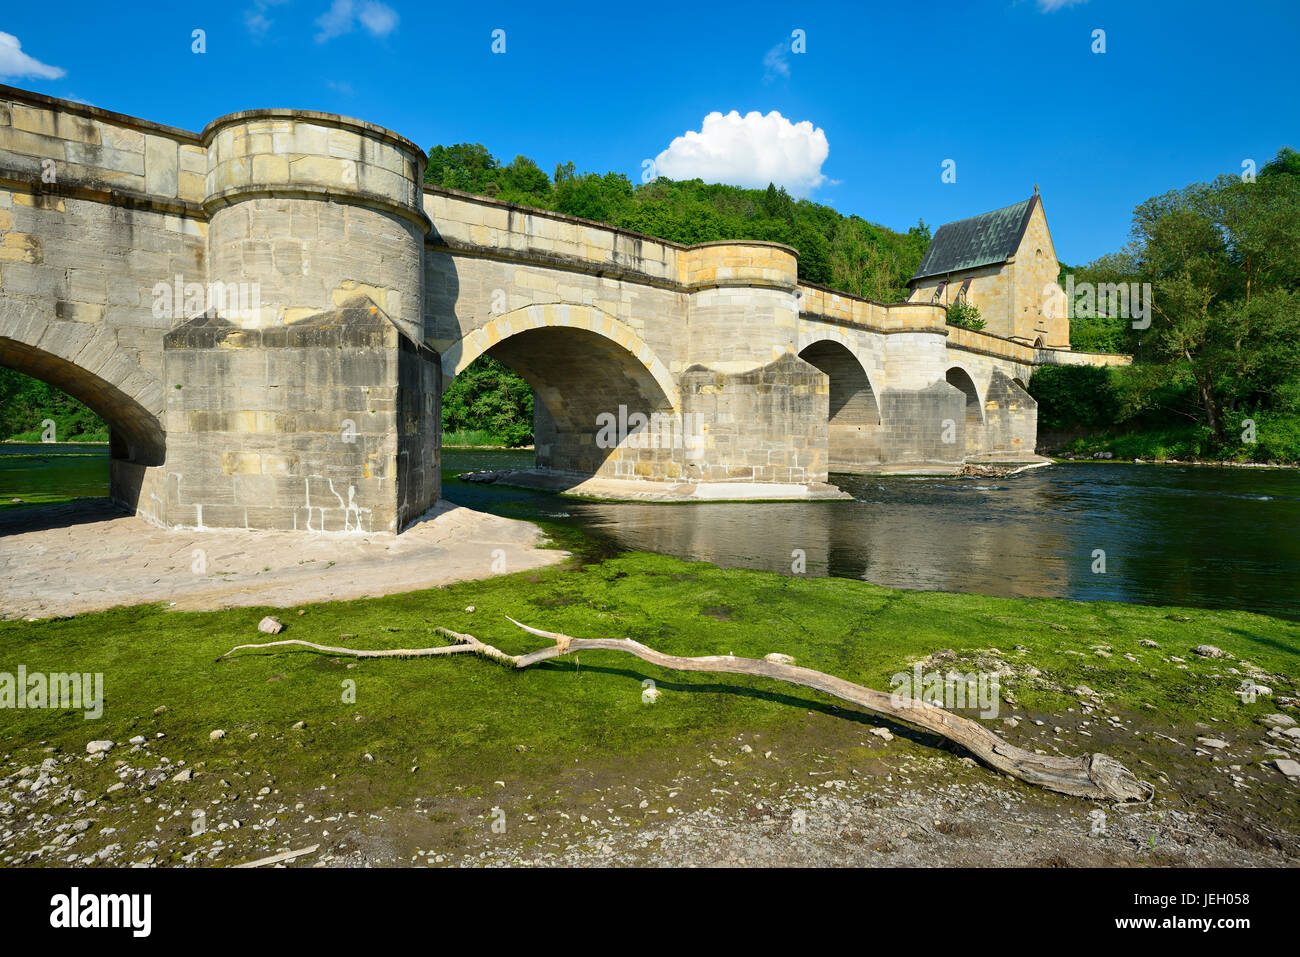 Il ponte di pietra sul fiume Werra, del XIII secolo, sul retro della cappella Liborius, Creuzburg, Turingia, Germania Foto Stock